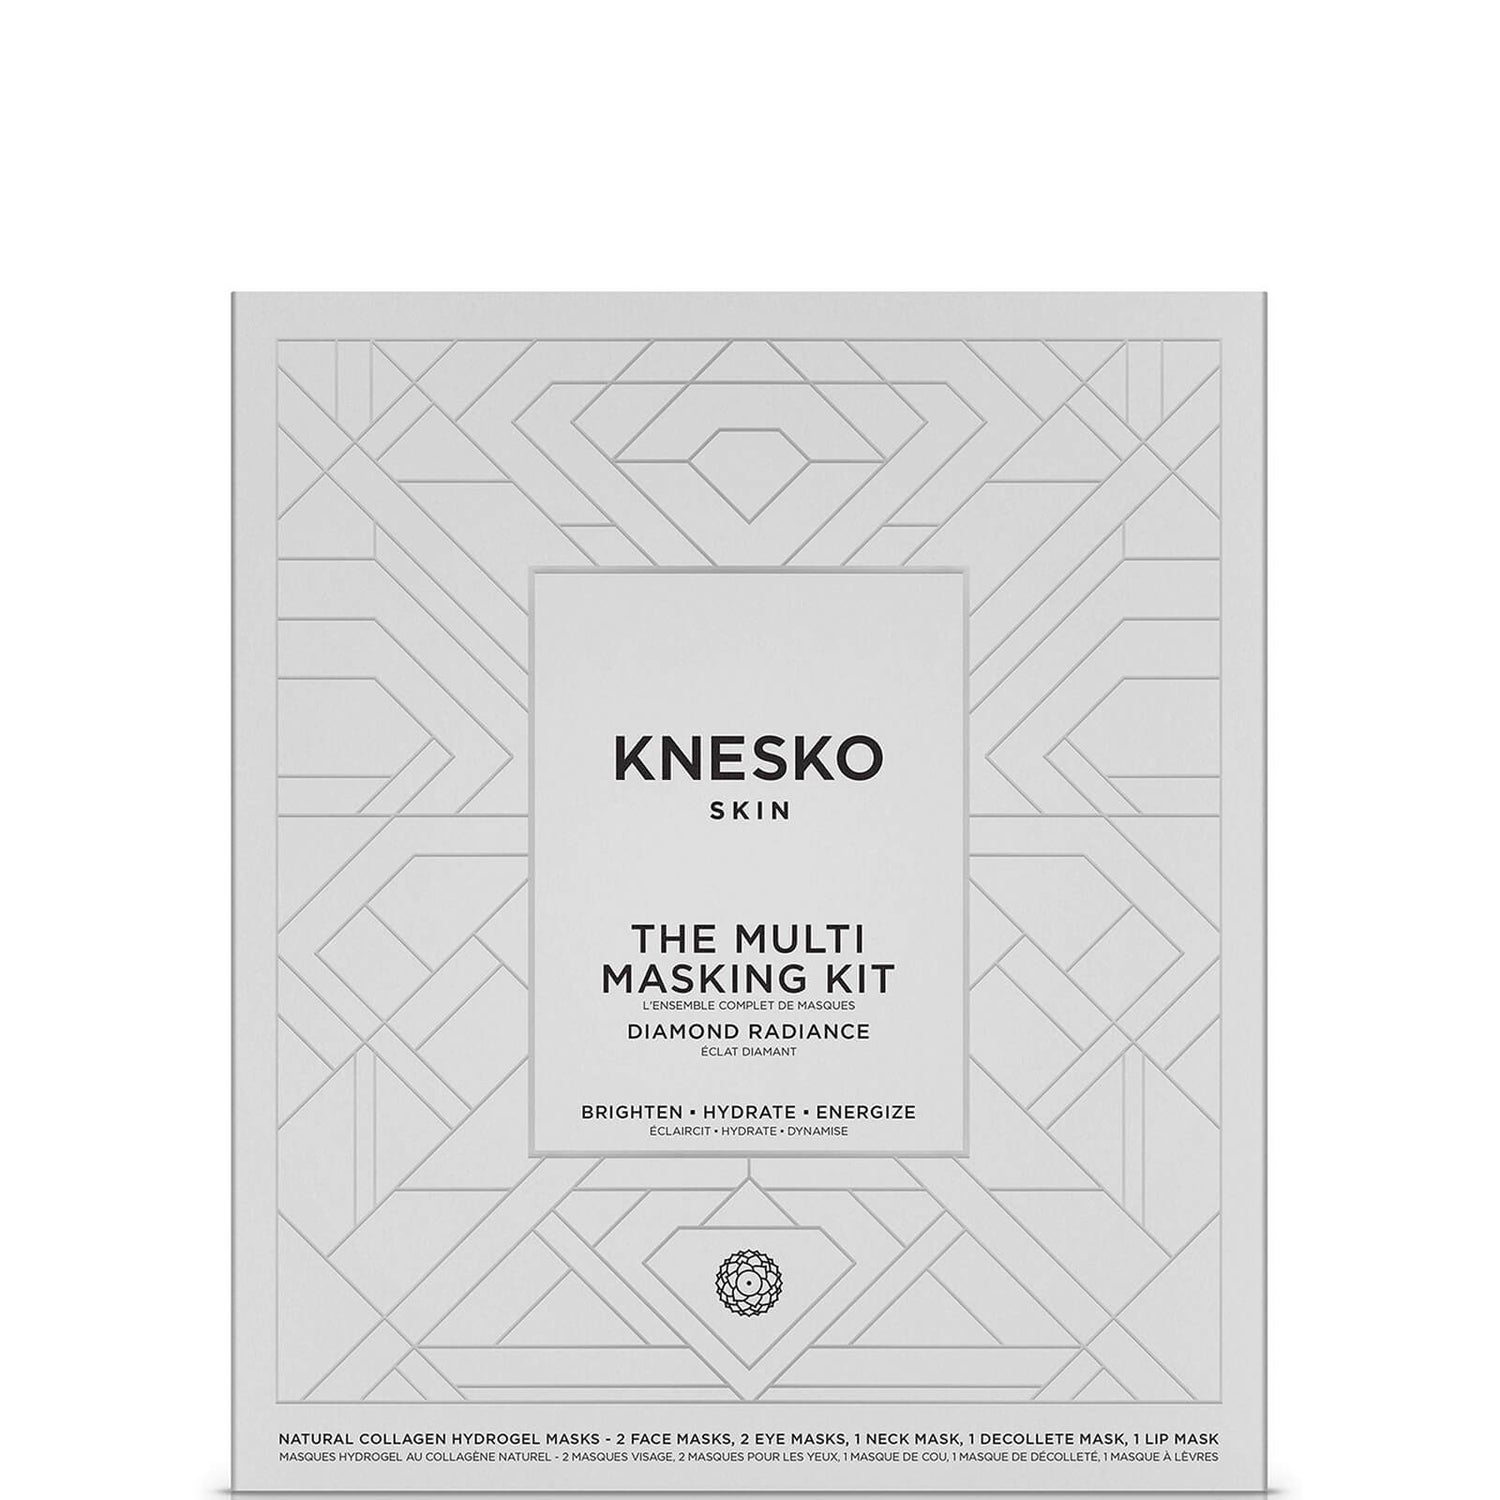 Knesko Skin Diamond Radiance Multi Masking Kit ($185.00)